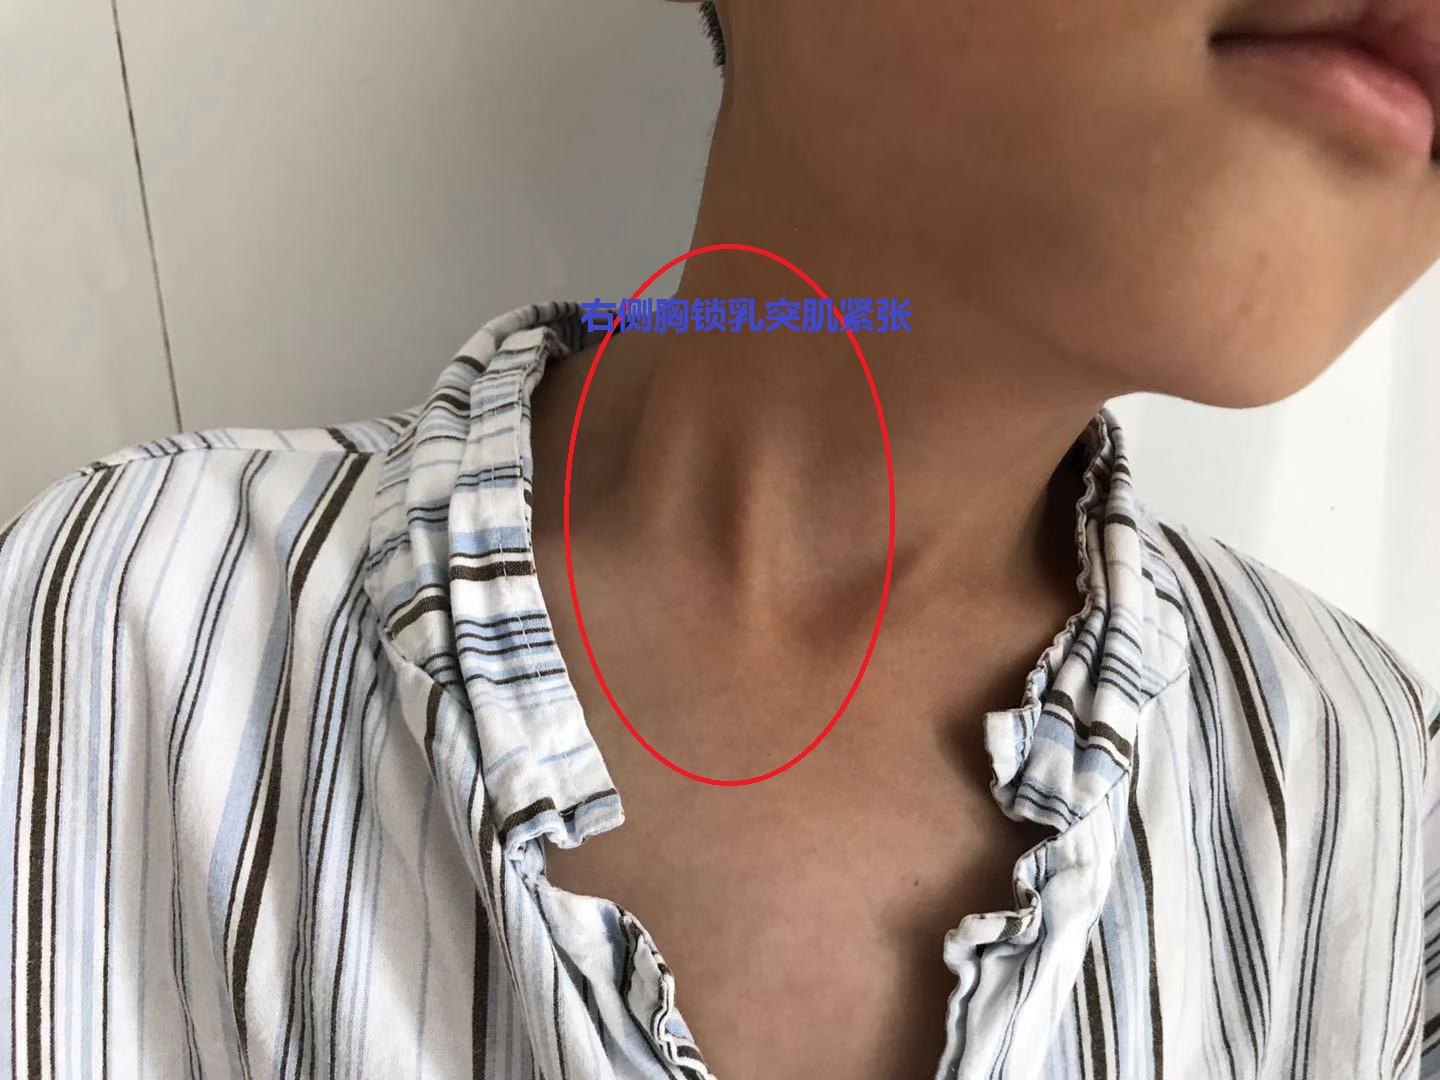 安徽歪脖子斜颈患者在徐州二院骨科找高绪仁关节镜微创手术的经验分享